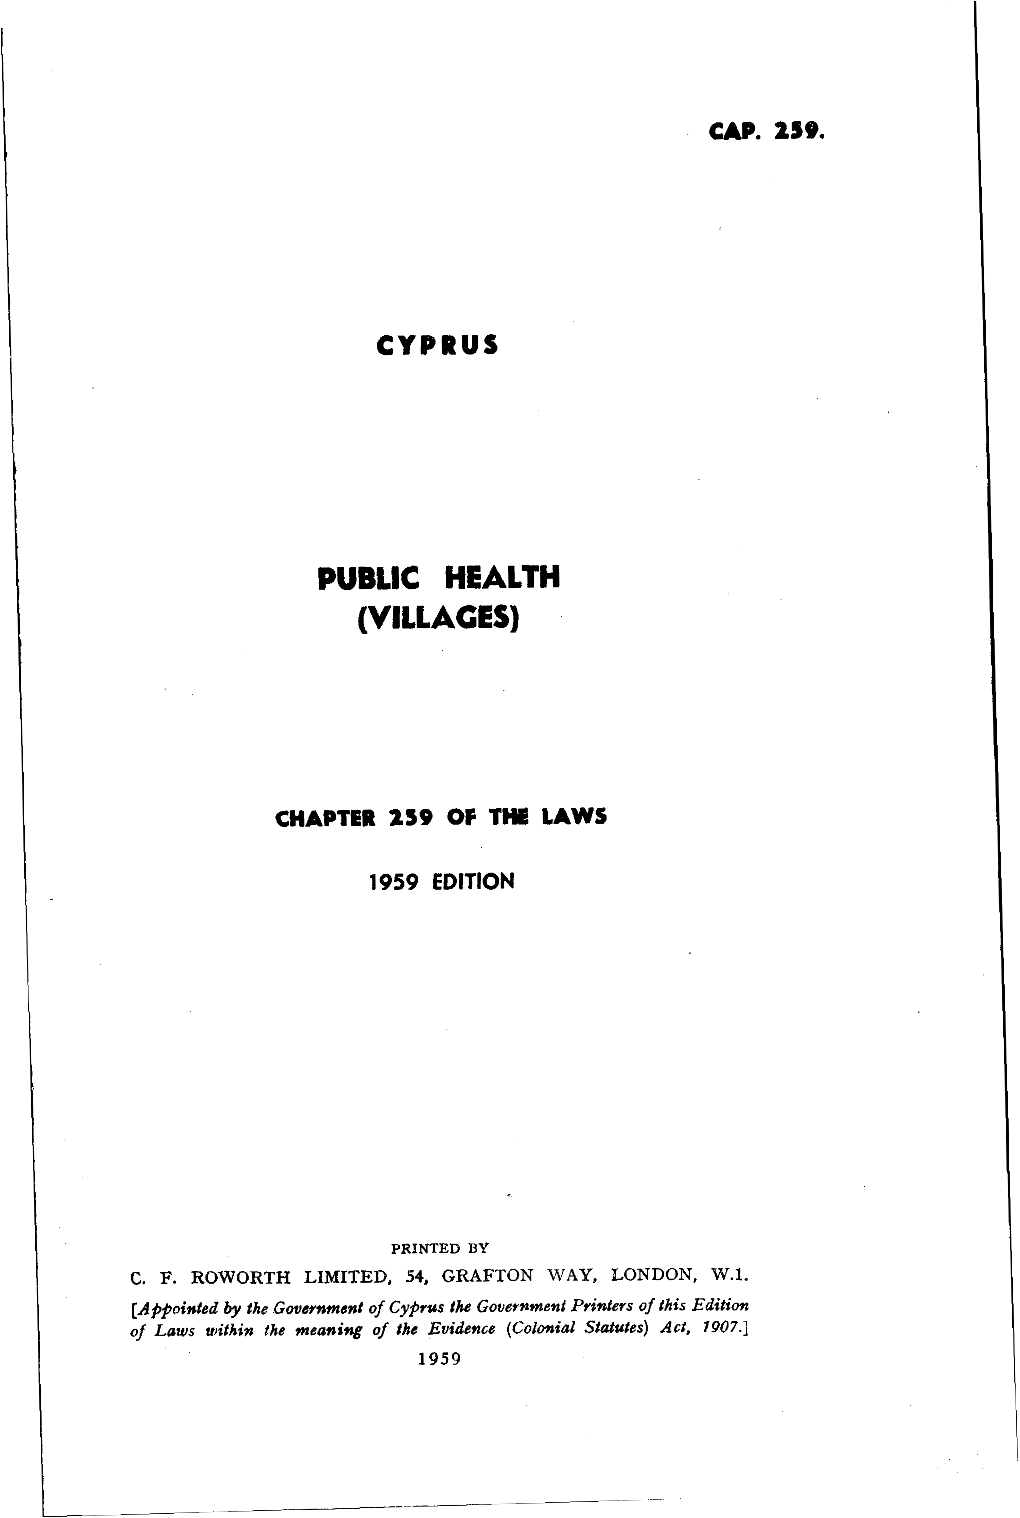 Public Health (Villages)